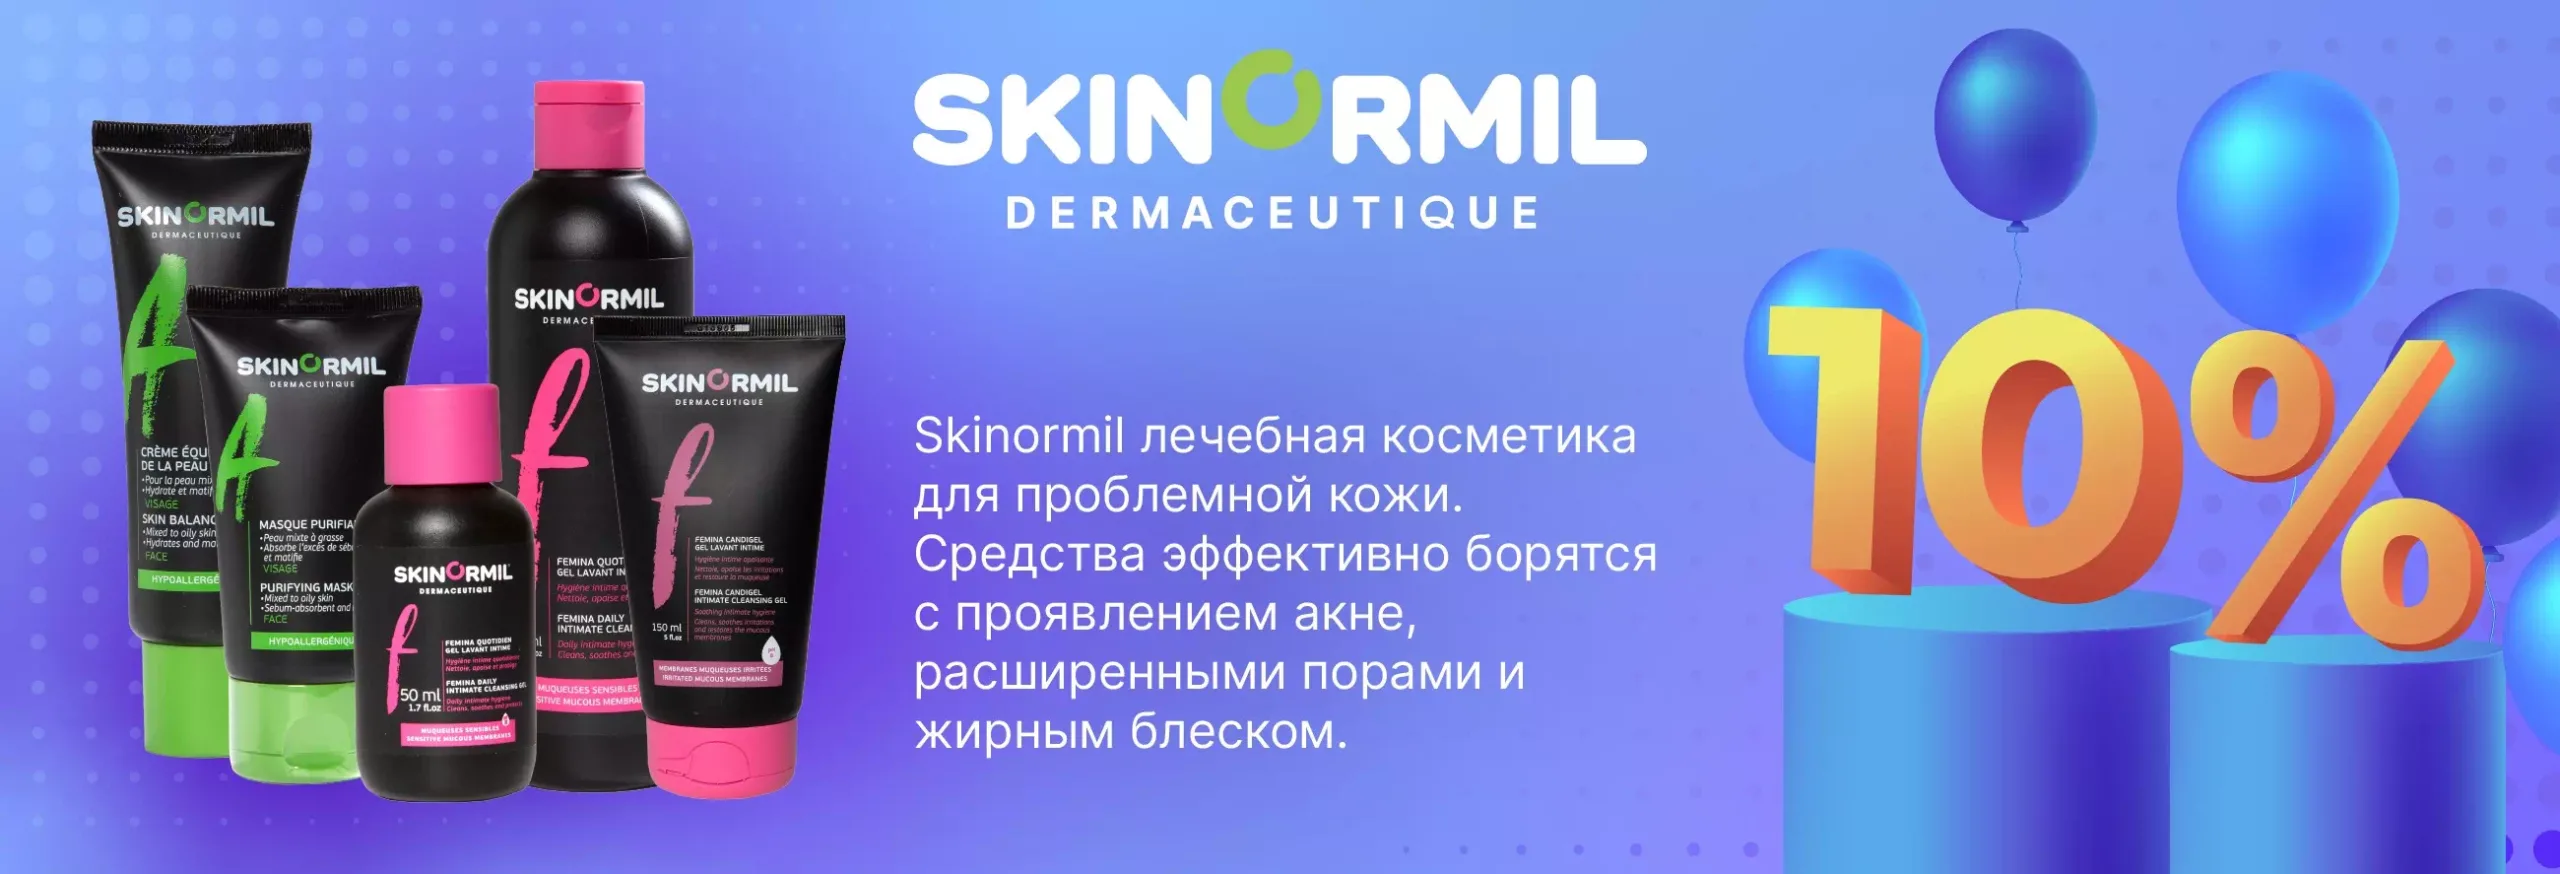 Skinormil